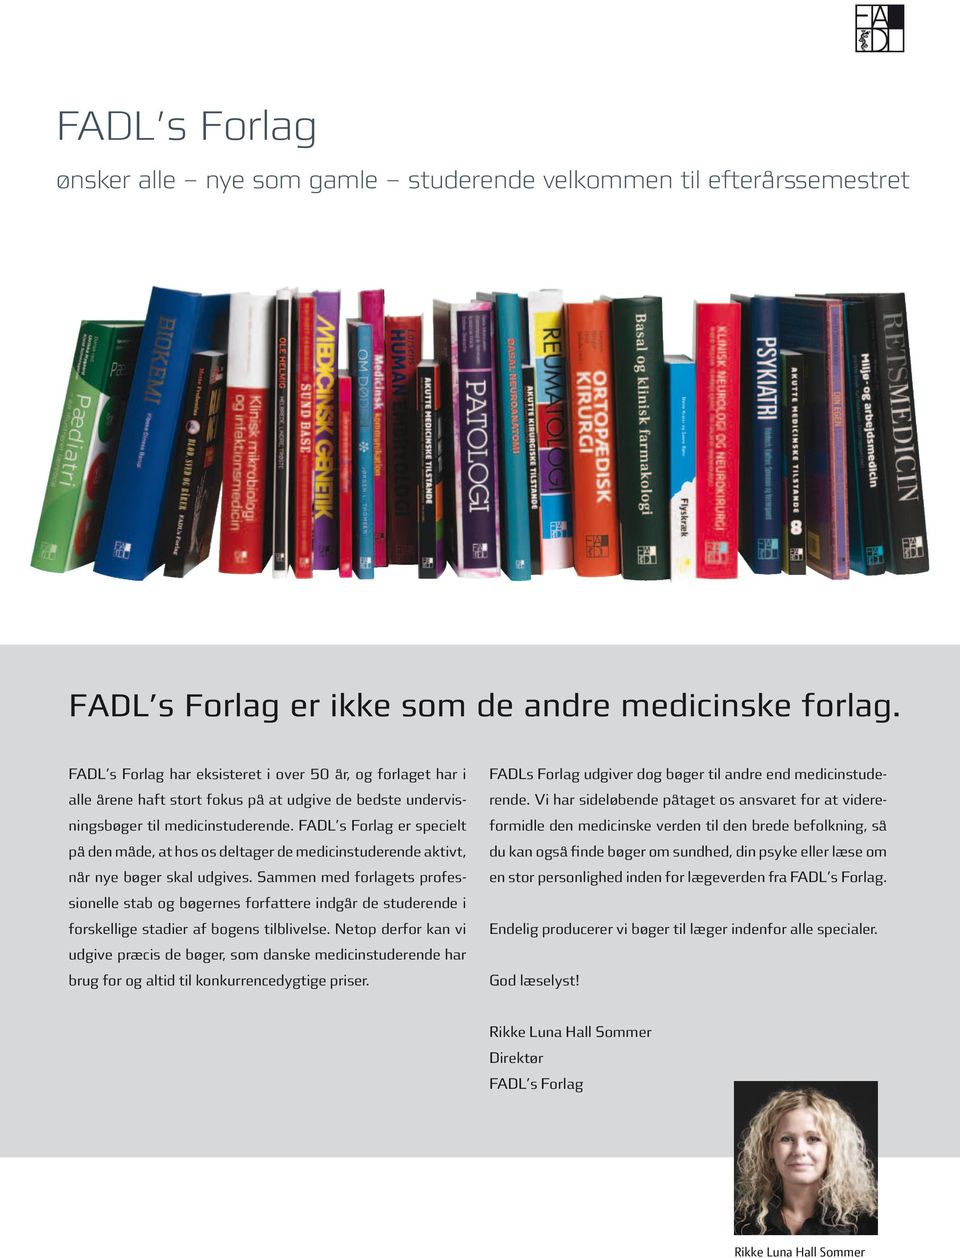 FADL s Forlag er specielt på den måde, at hos os deltager de medicinstuderende aktivt, når nye bøger skal udgives.